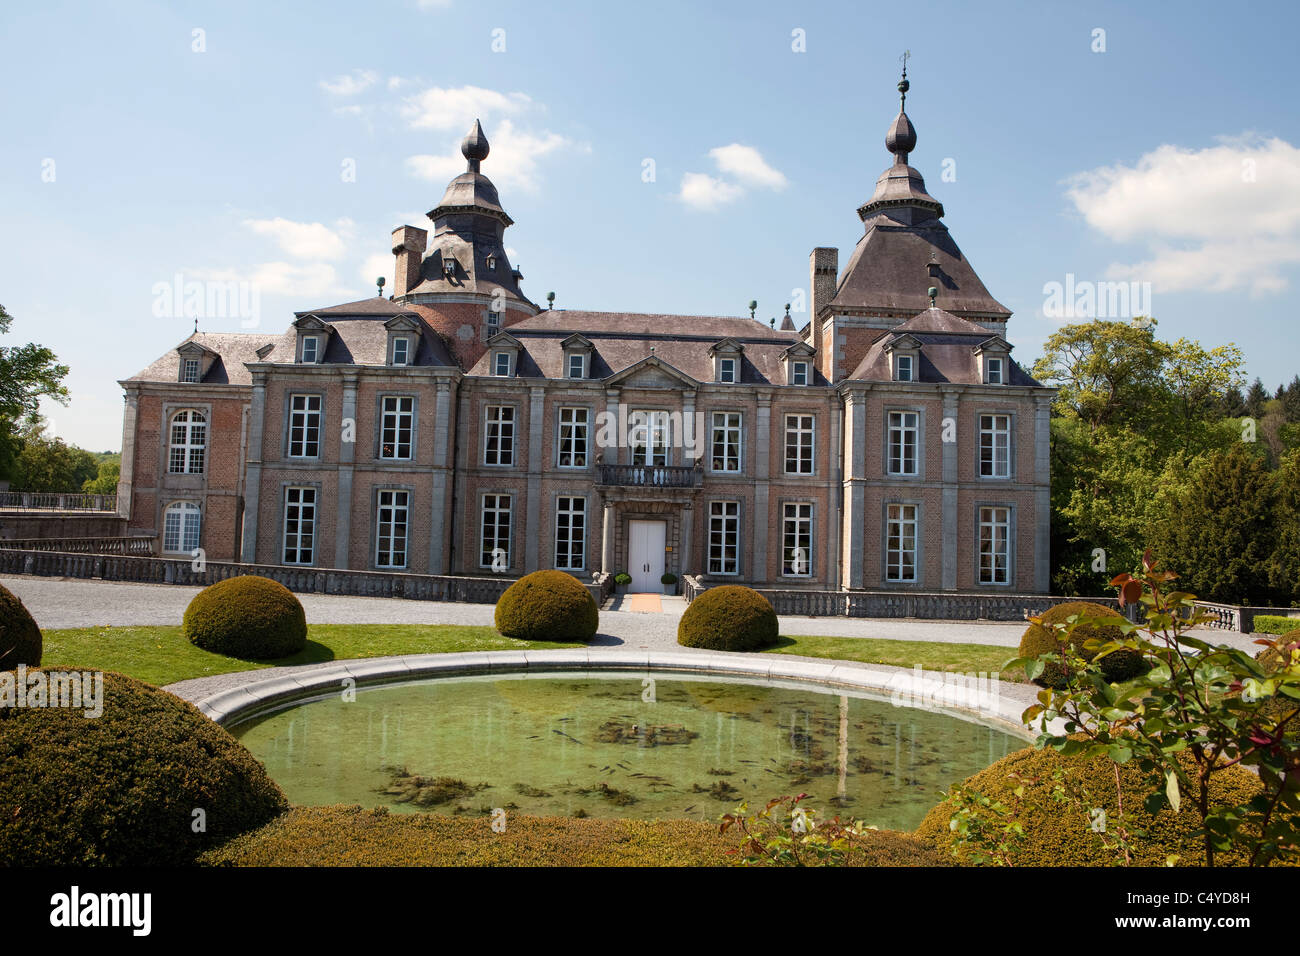 Château de Modave château, Modave, province de Liège, Belgique, Europe Banque D'Images